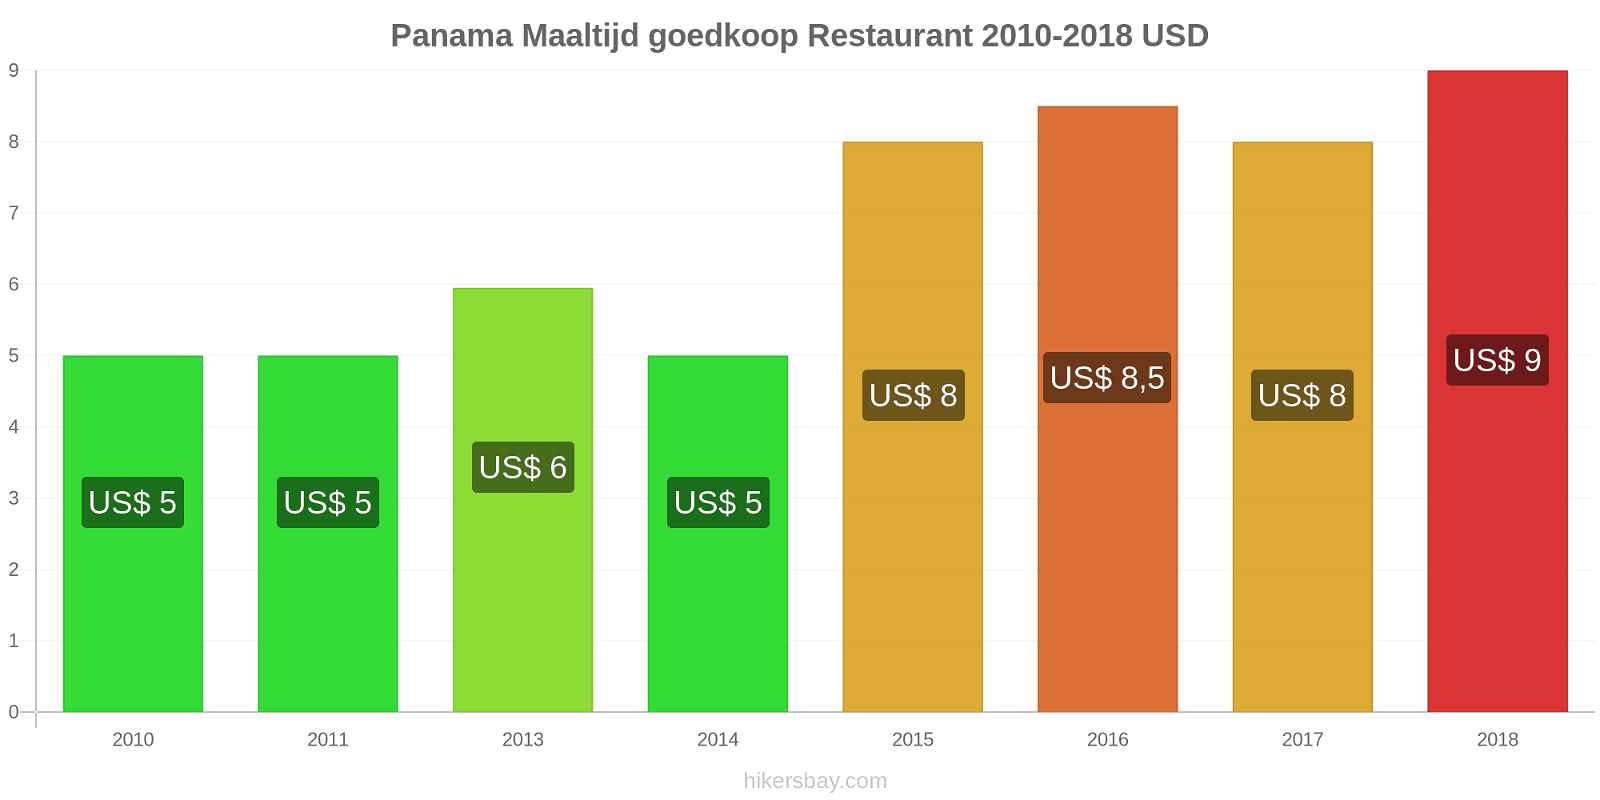 Panama prijswijzigingen Maaltijd in een goedkoop restaurant hikersbay.com